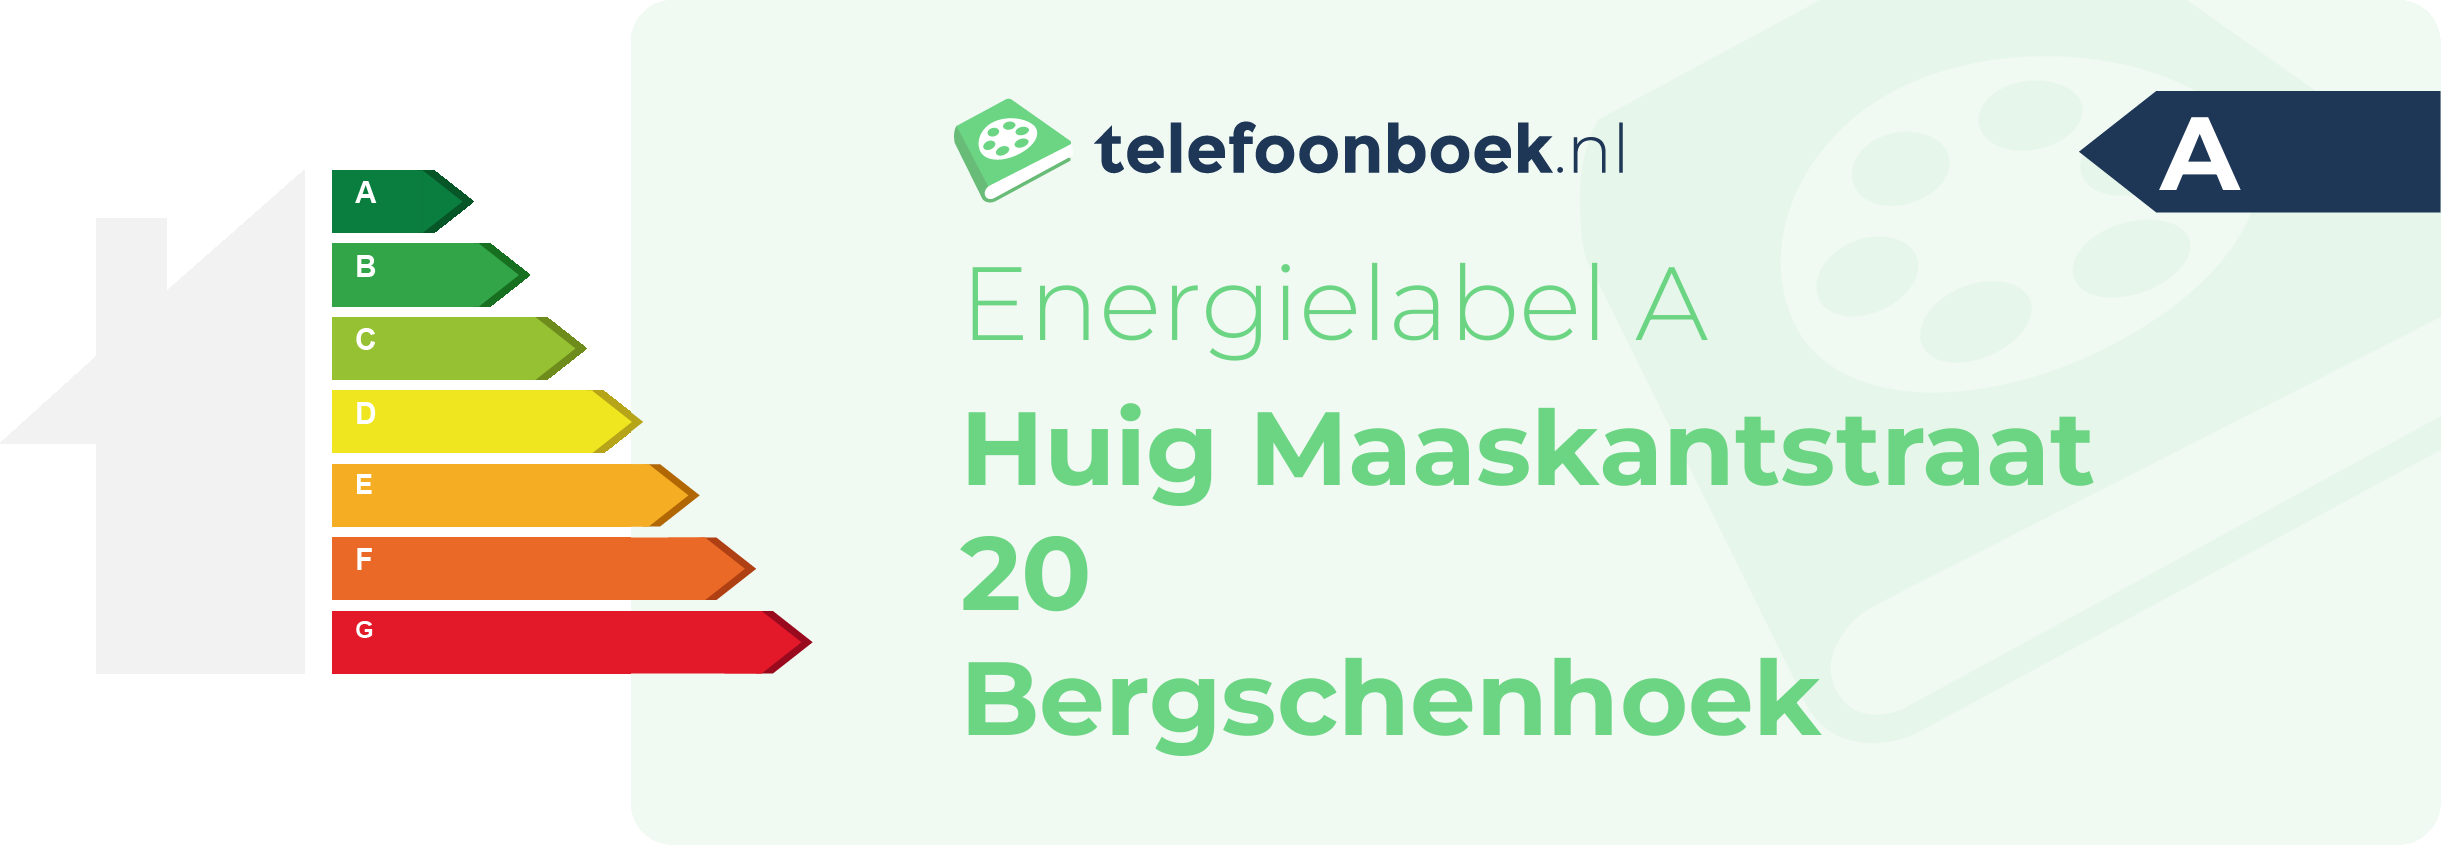 Energielabel Huig Maaskantstraat 20 Bergschenhoek